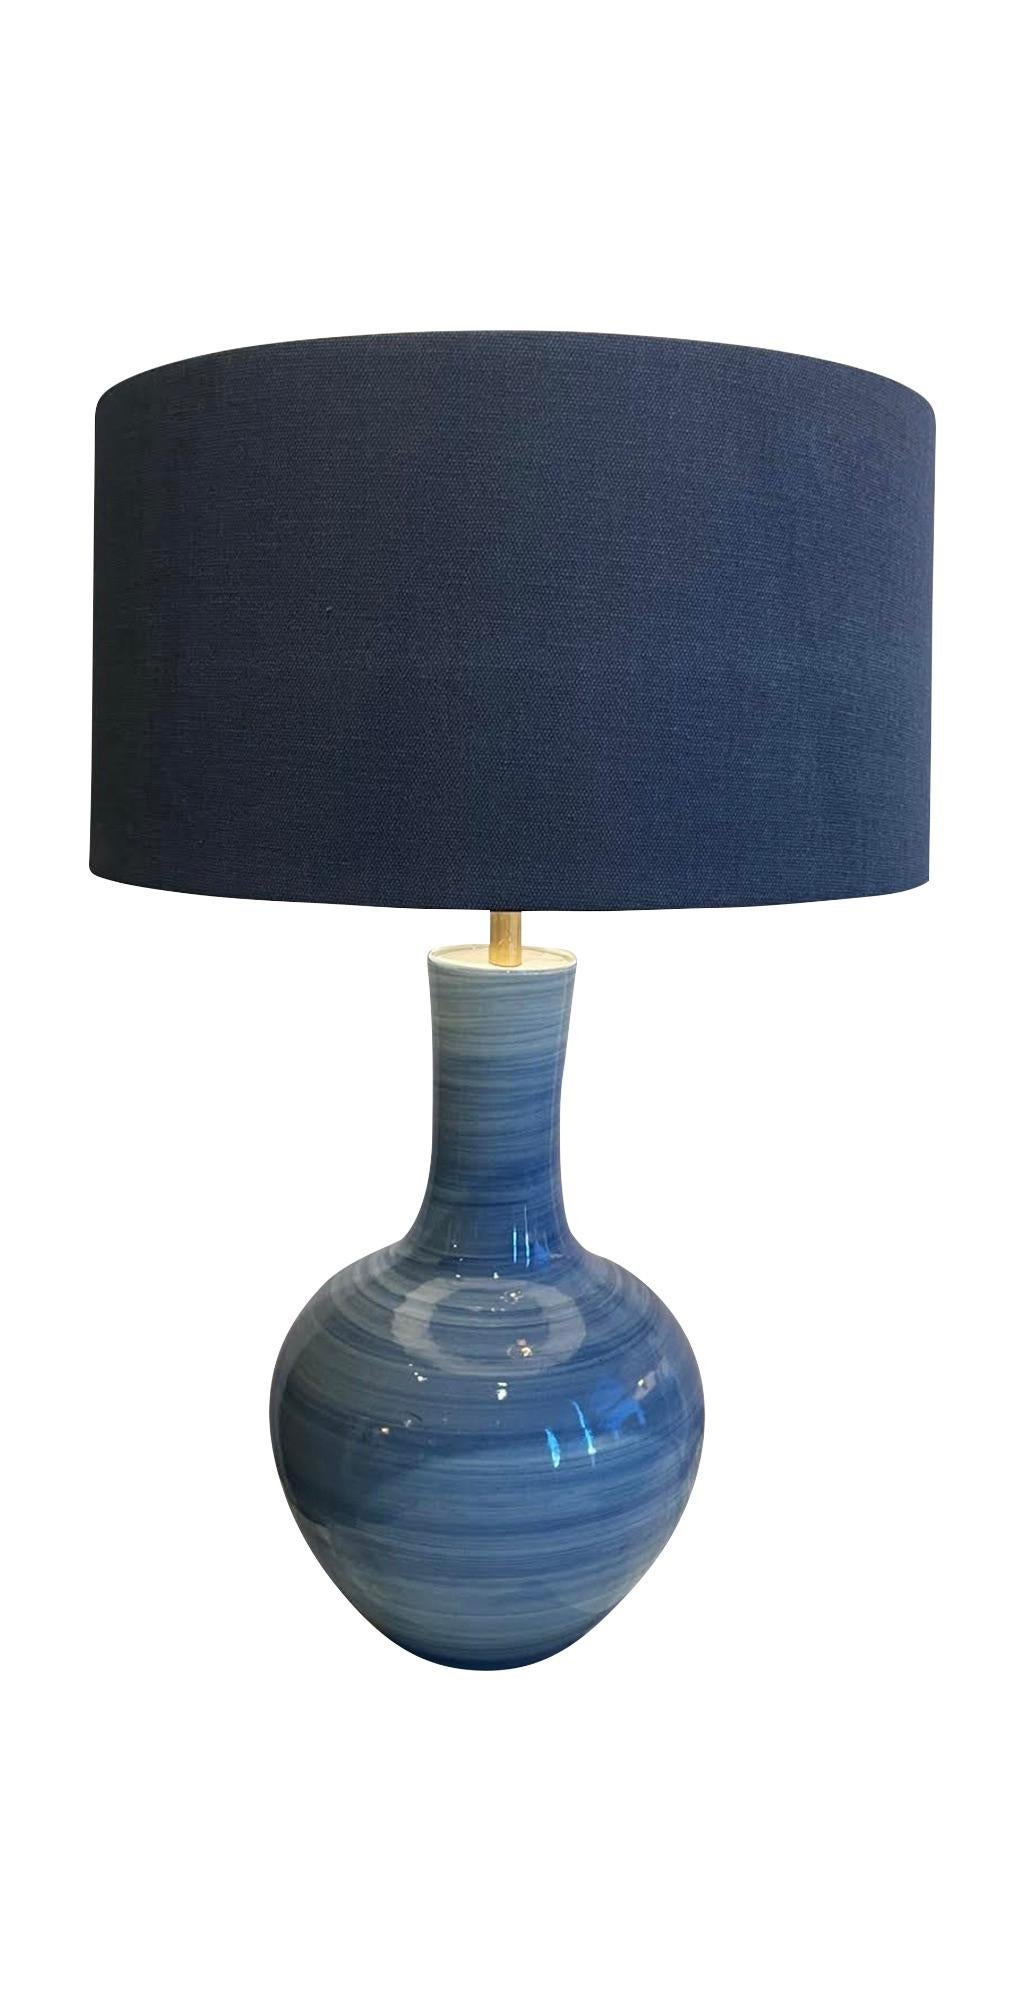 Paire de lampes contemporaines chinoises à motifs horizontaux bleus striés.
Design/One en forme de col de cygne.
Abat-jour en boucle blanc inclus.
Le diamètre de la base mesure 9